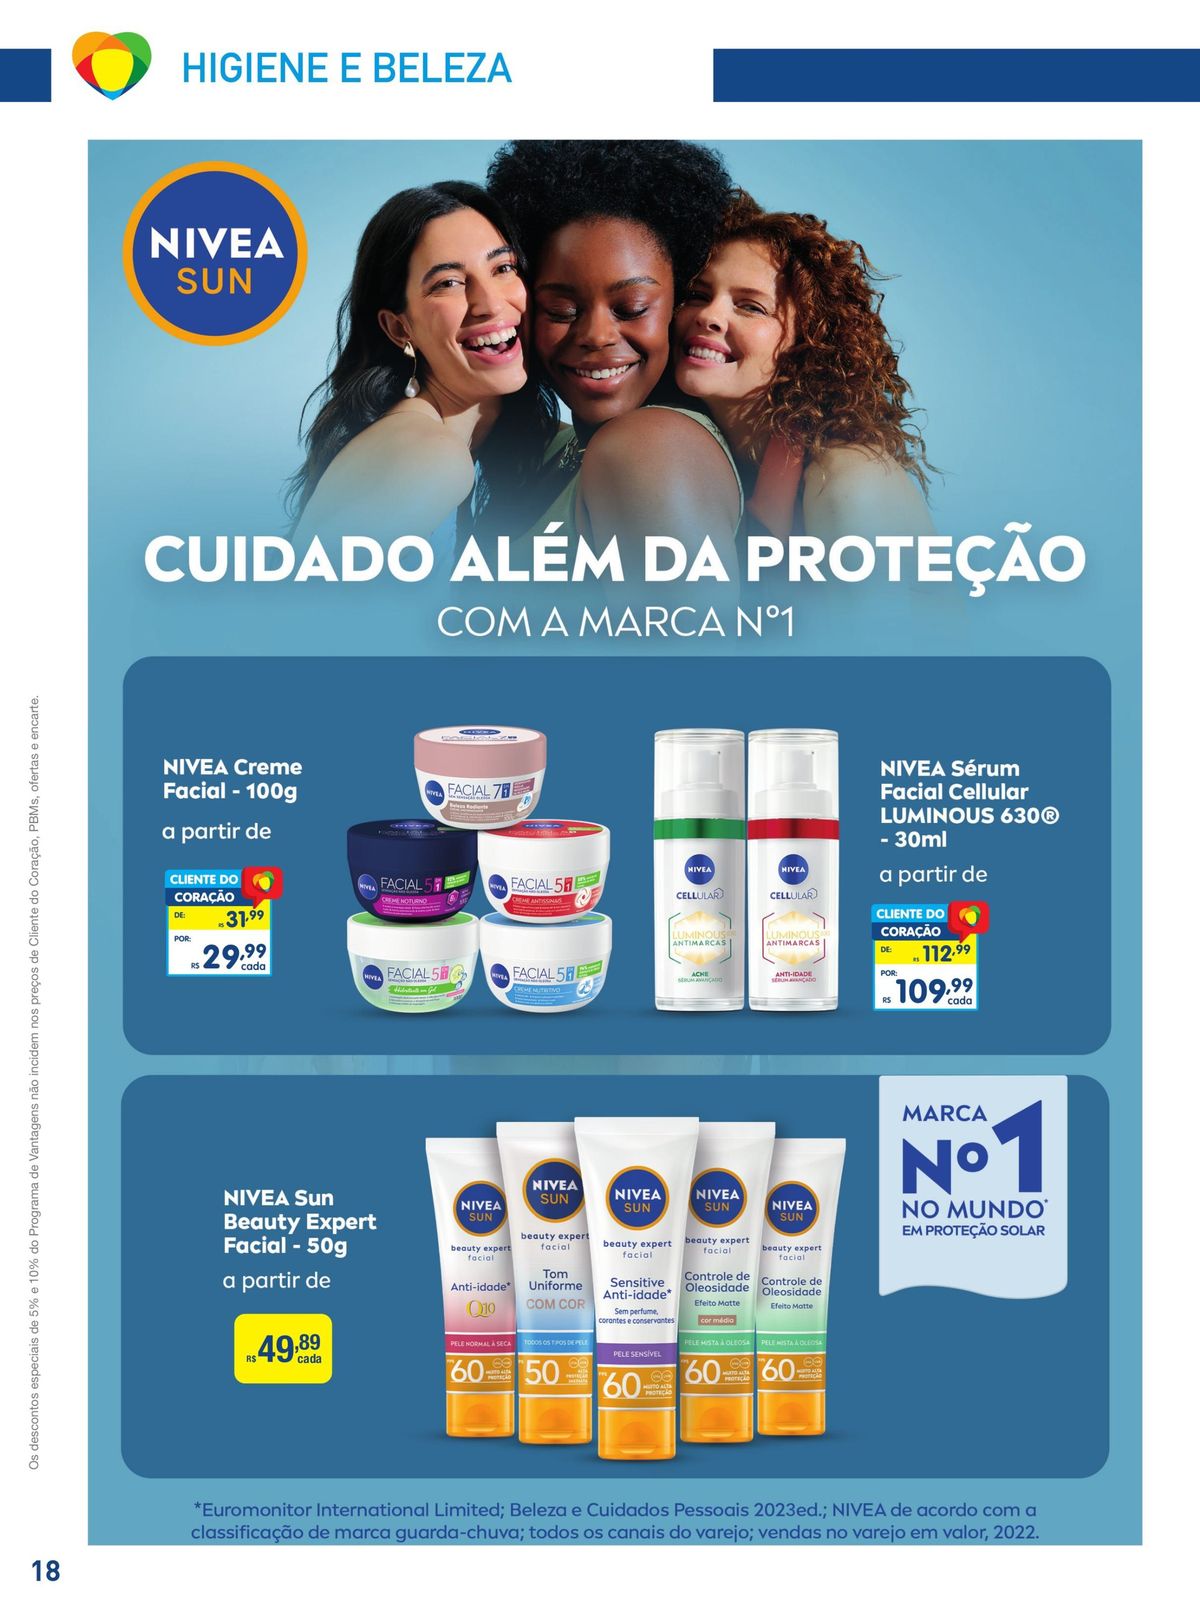 Produtos NIVEA em promoção: Creme Facial, Água Micelar e Sérum Cellular Luminous